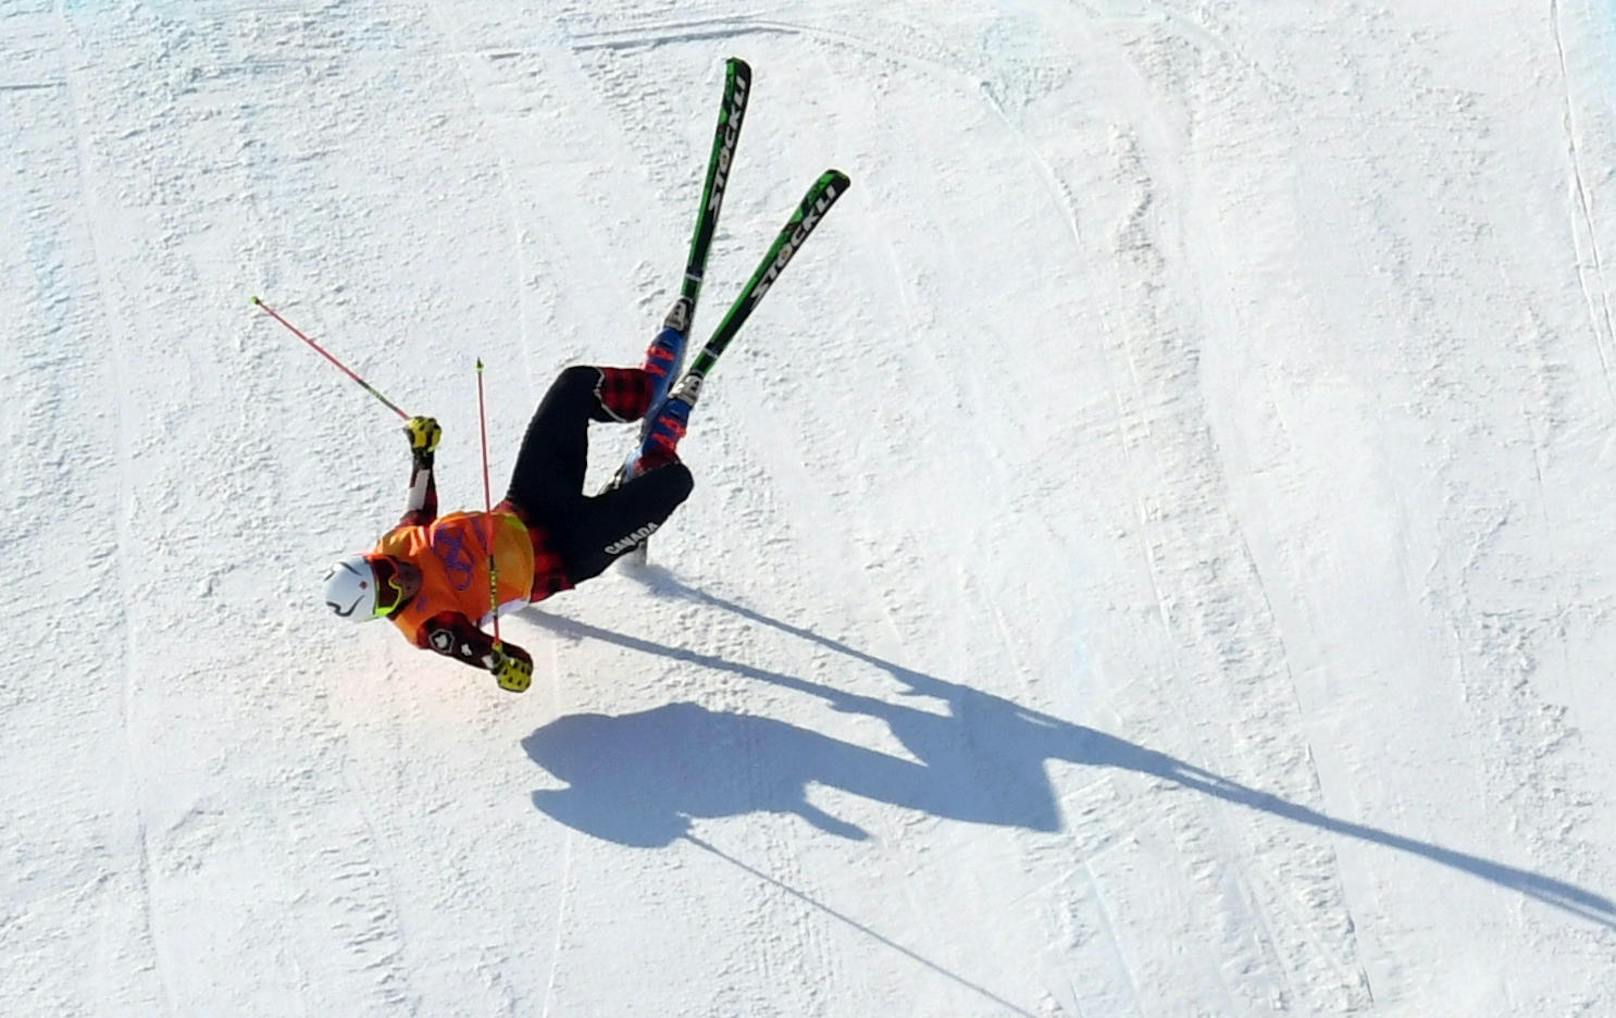 Ebenfalls im Skicross erwischte es den kanadischen Routinier Chris Delbosco schwer. Der 35-Jährige zog sich einen Beckenbruch zu, Frankreichs Hoffnung Terence Tchiknavorian zog sich einen Schienbeinbruch zu.